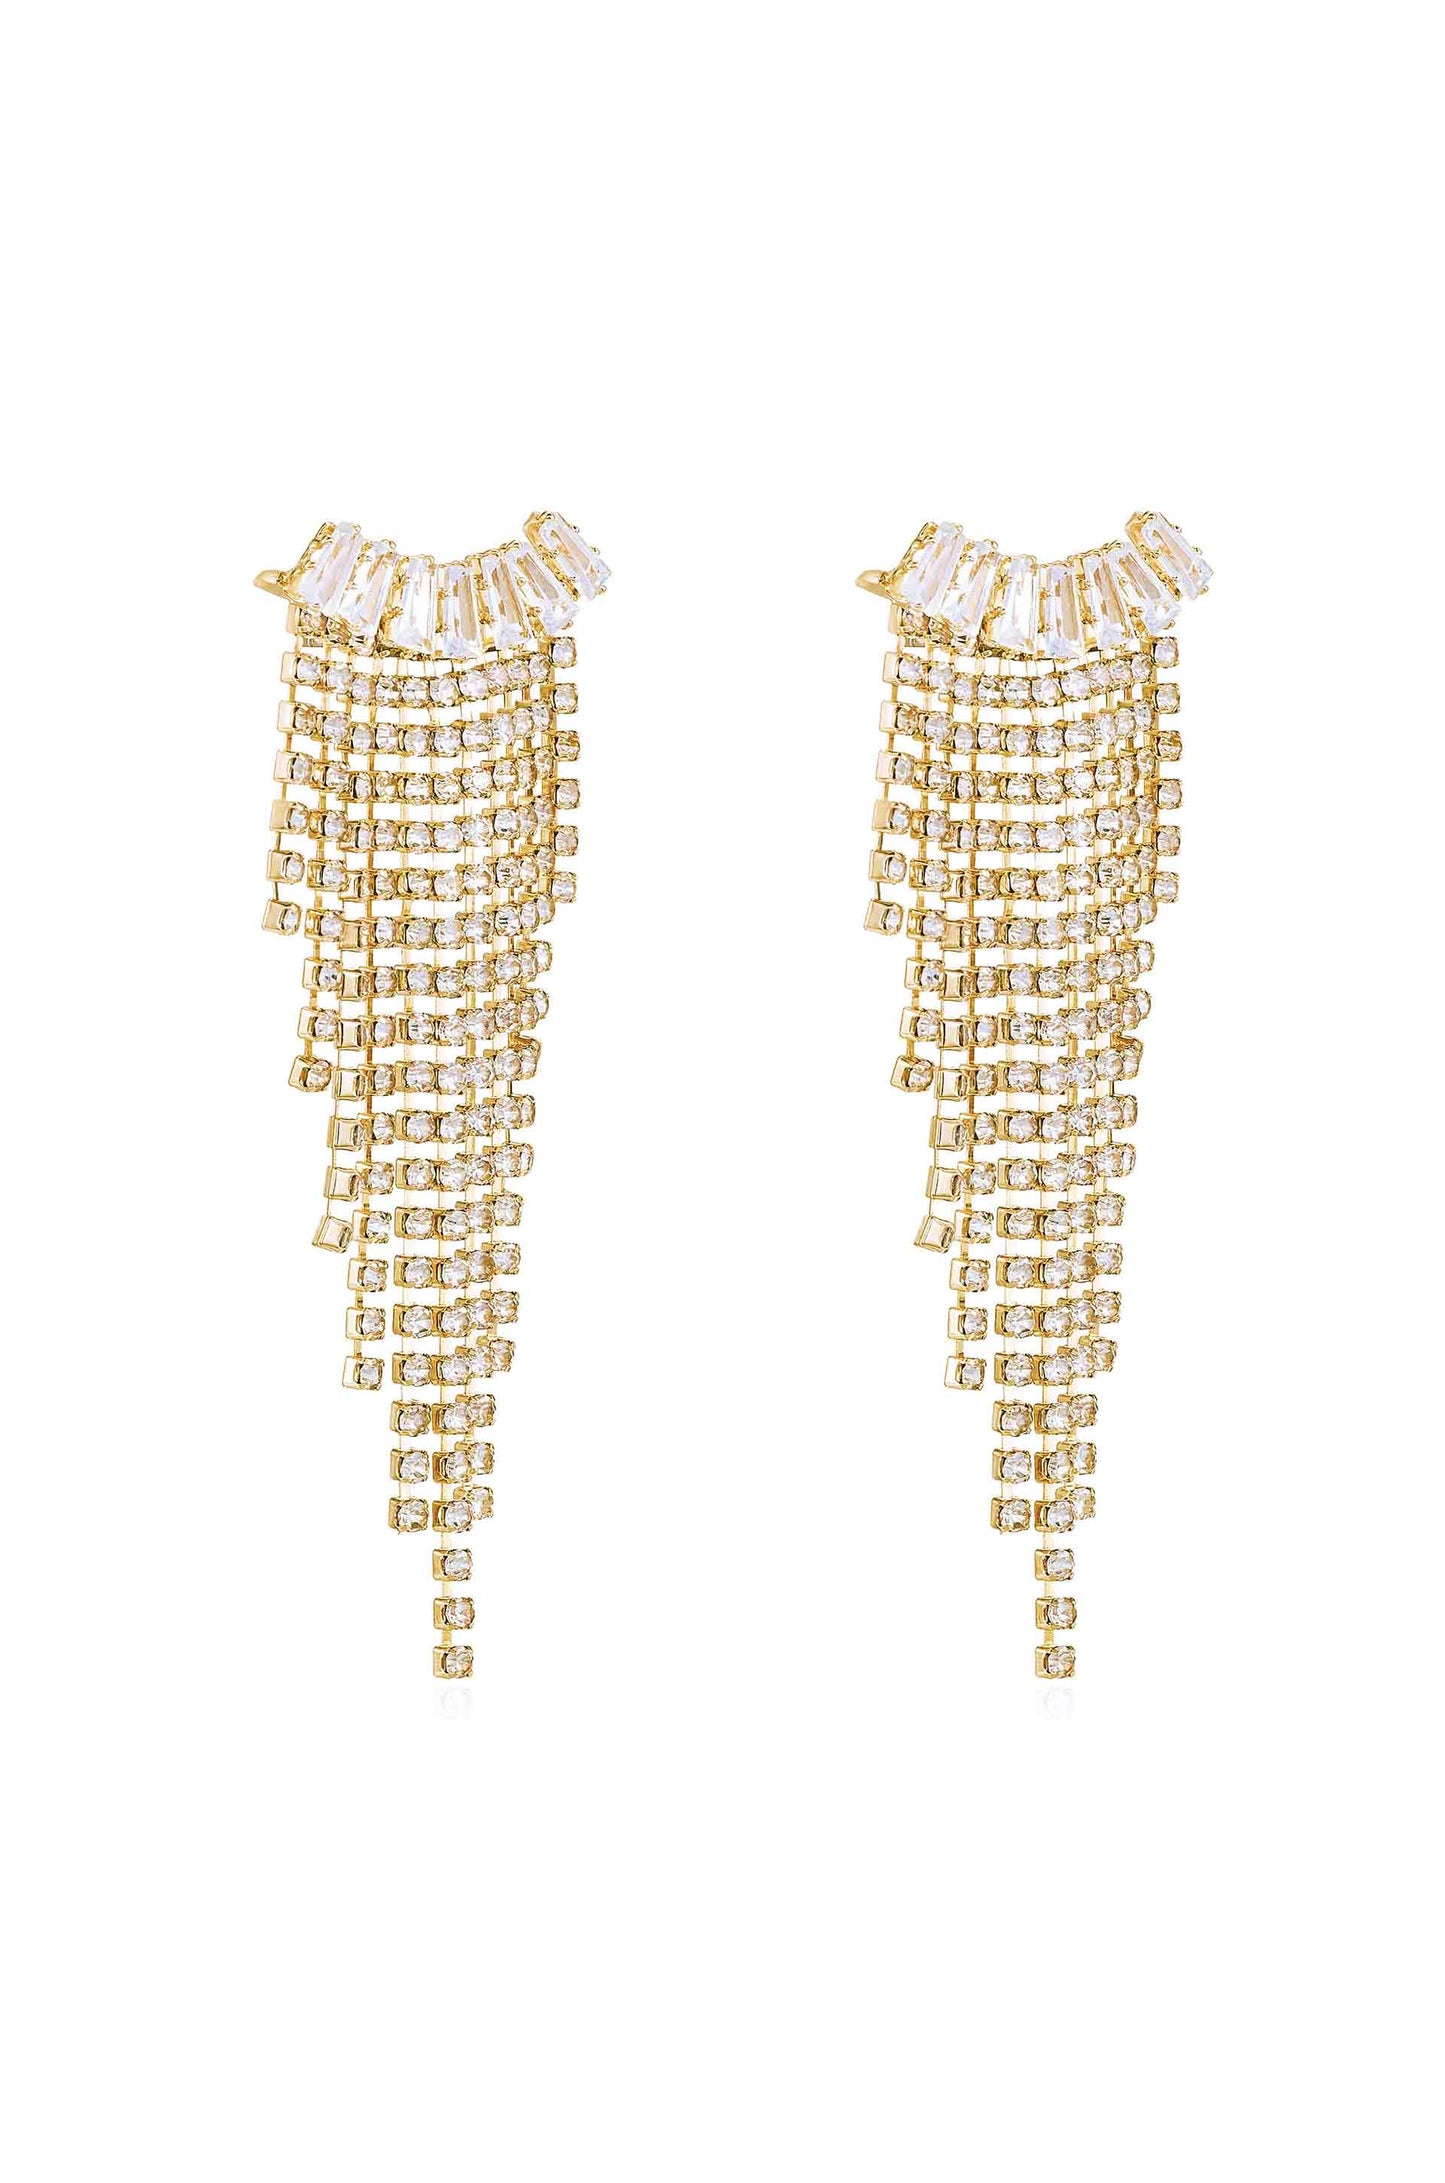 Angel Fringe Crystal Earrings - Premium Earrings from Ettika - Just $70! Shop now at Tooksie